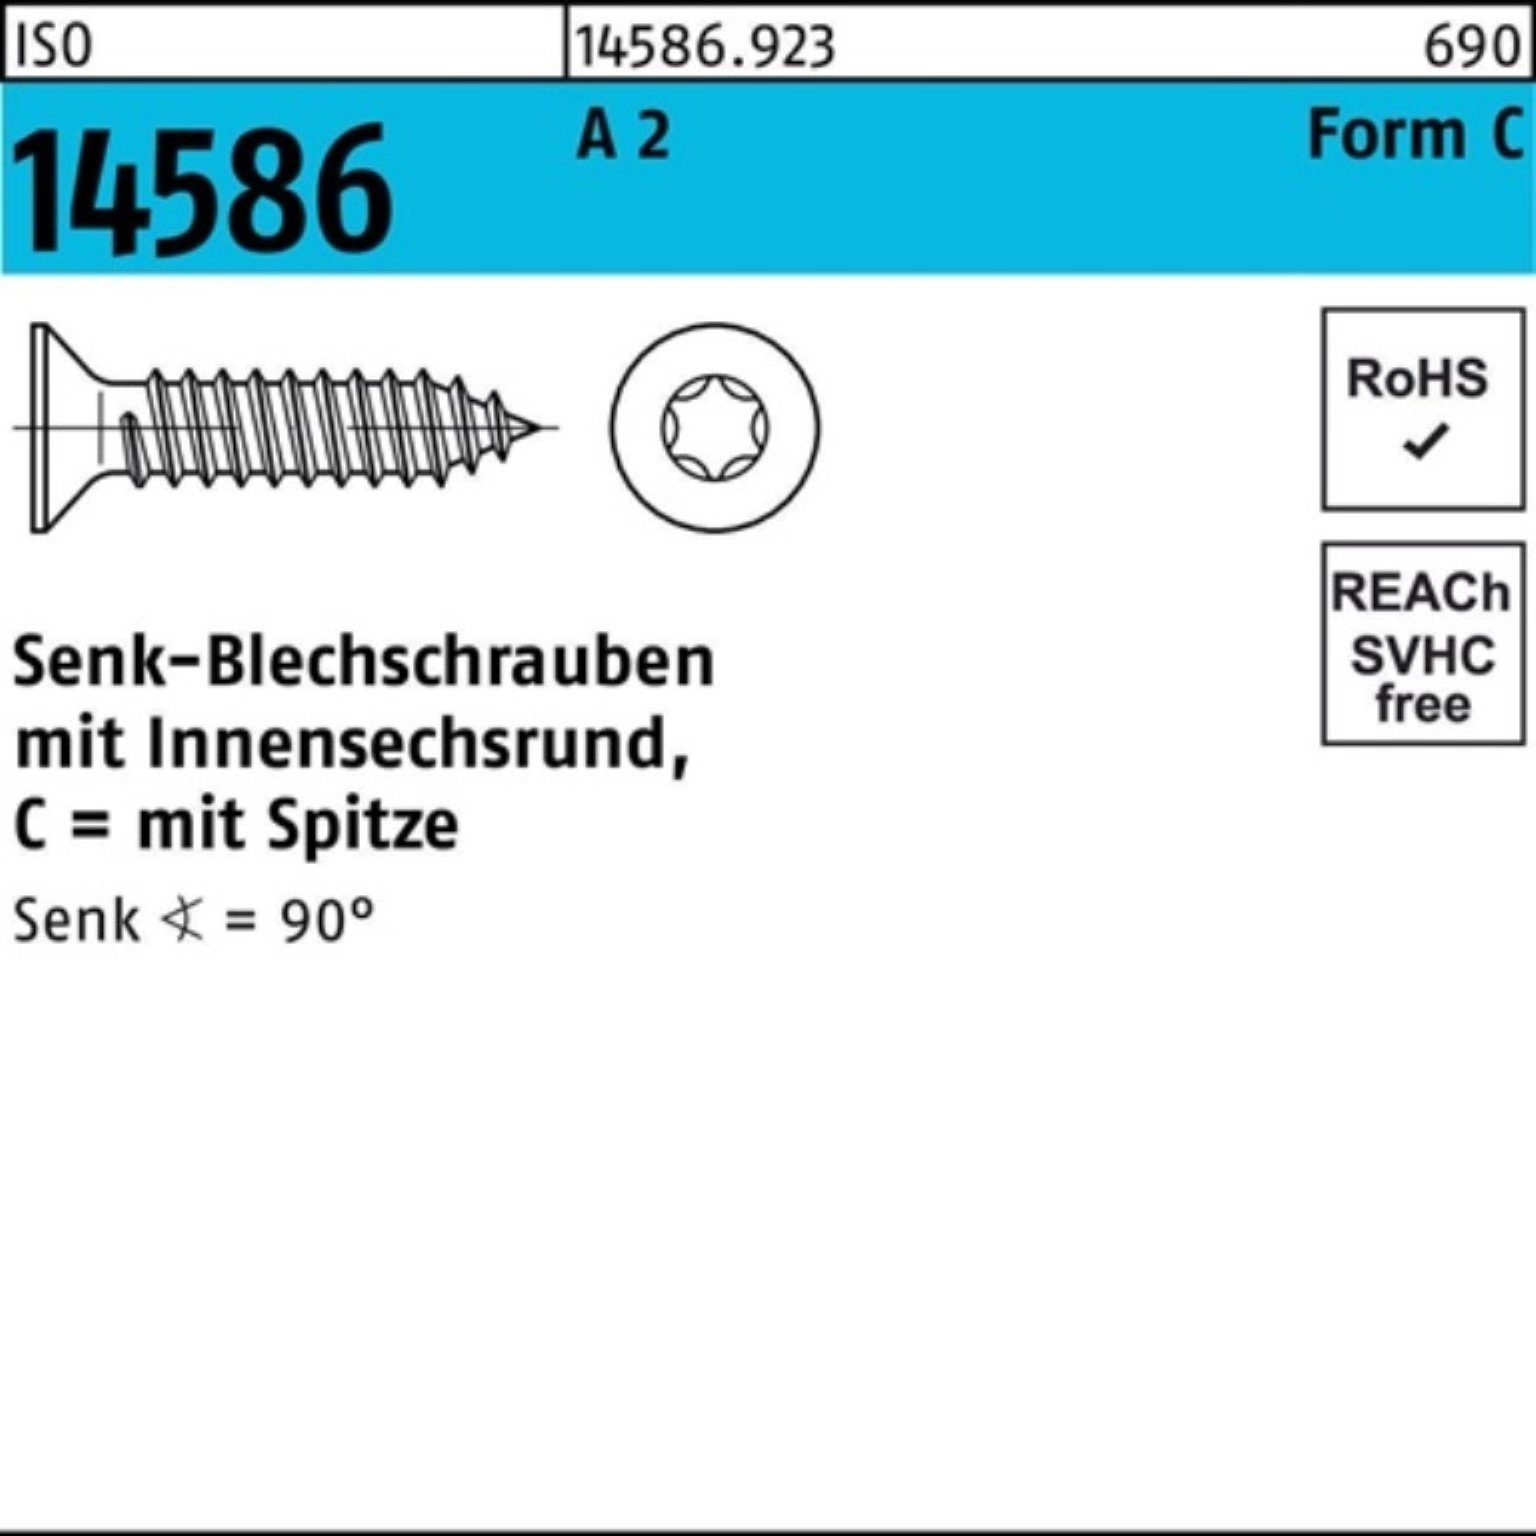 Senkblechschraube 25 14586 Reyher 4,2x 2 5 500er ISO Pack -C A T20 ISR/Spitze Schraube